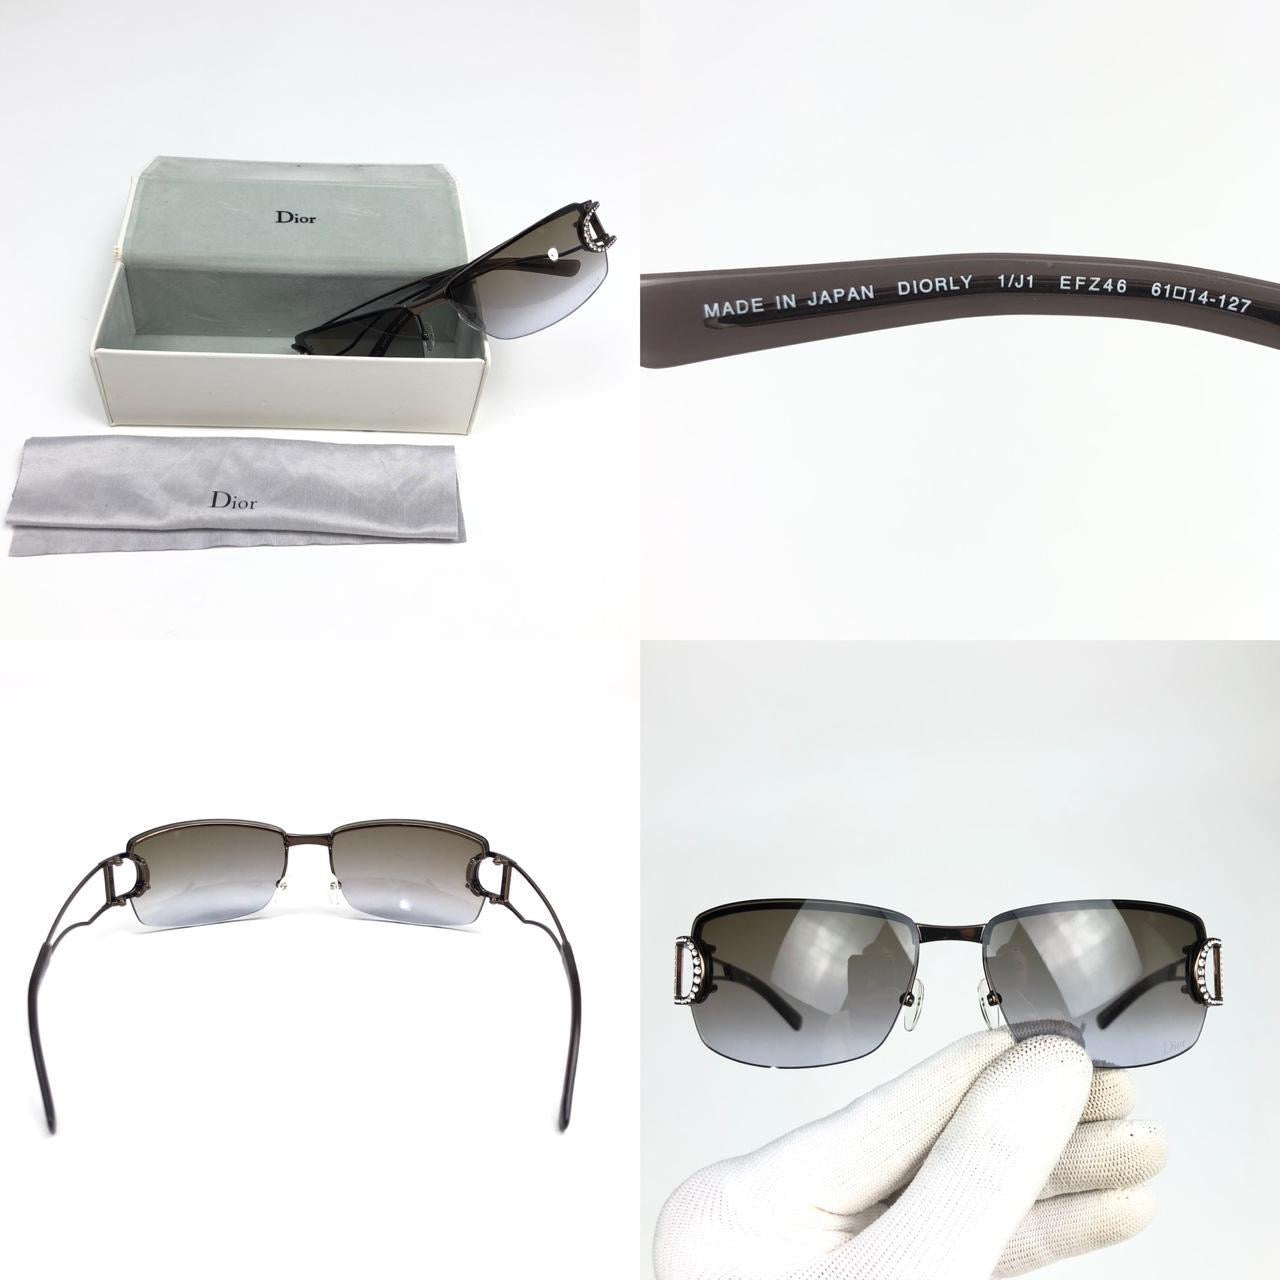 Christian Dior Diamanté Sunglasses